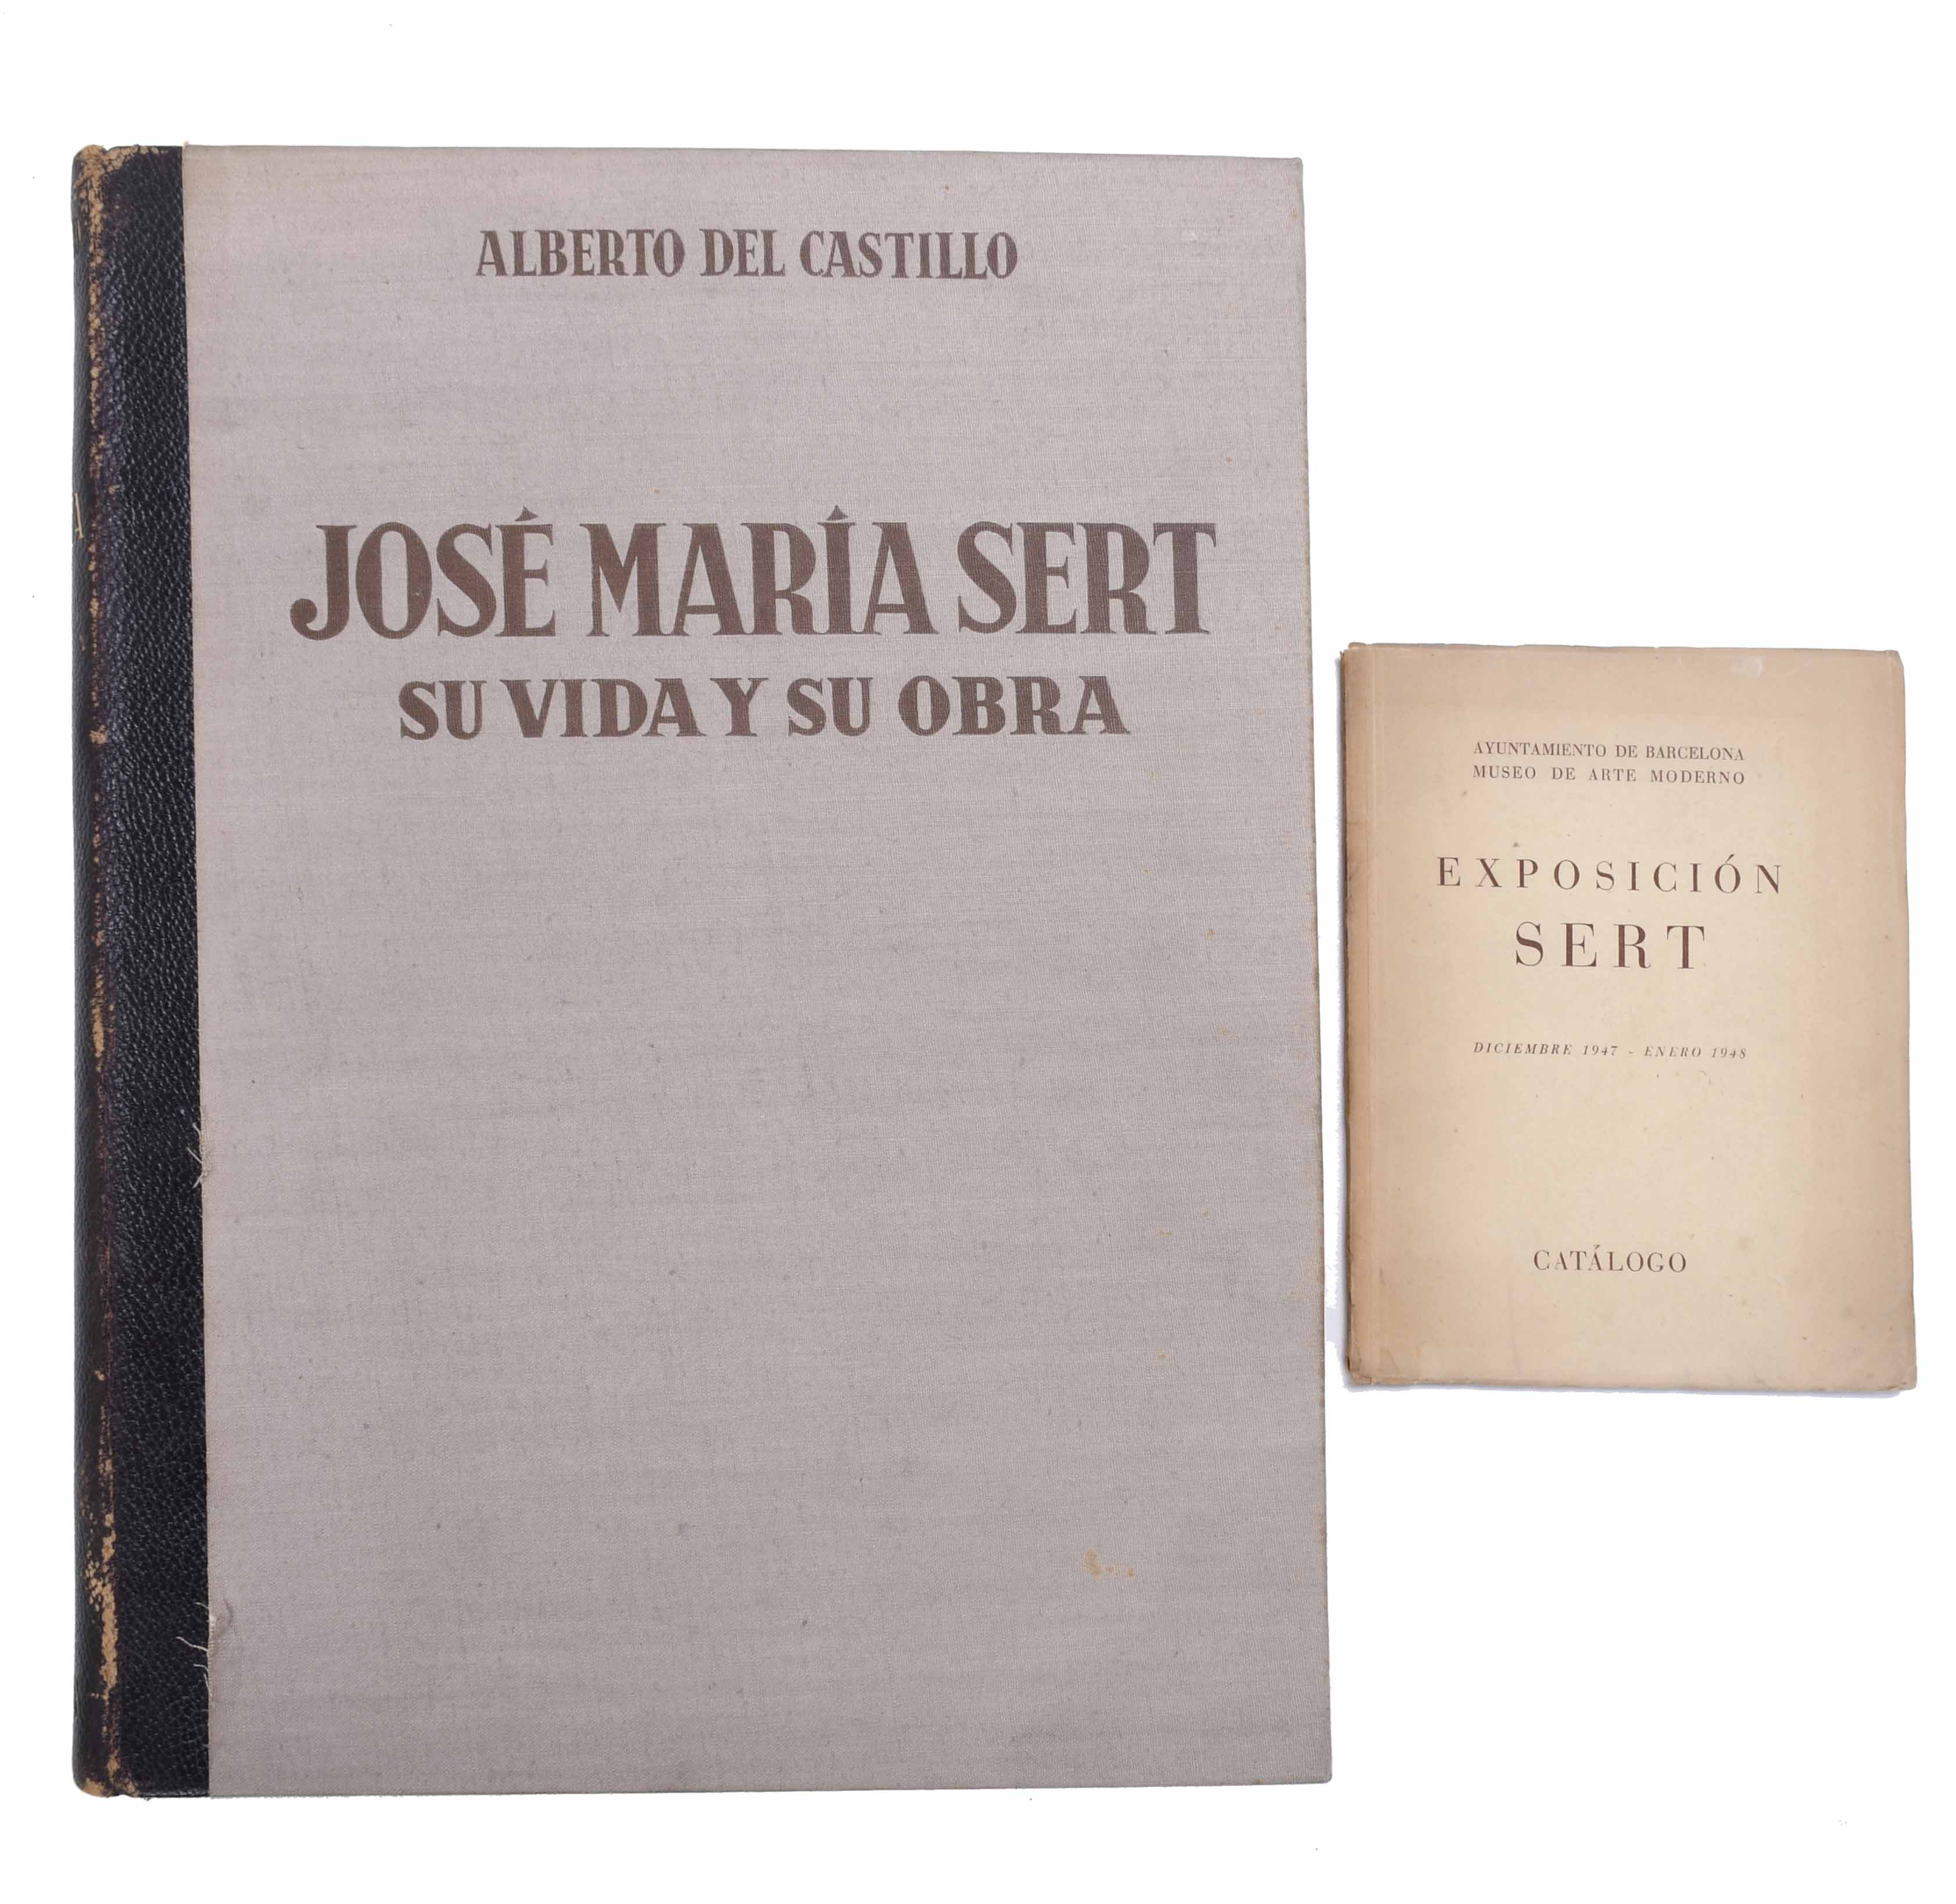 "DOS LIBROS SOBRE JOSÉ MARÍA SERT", 1947.